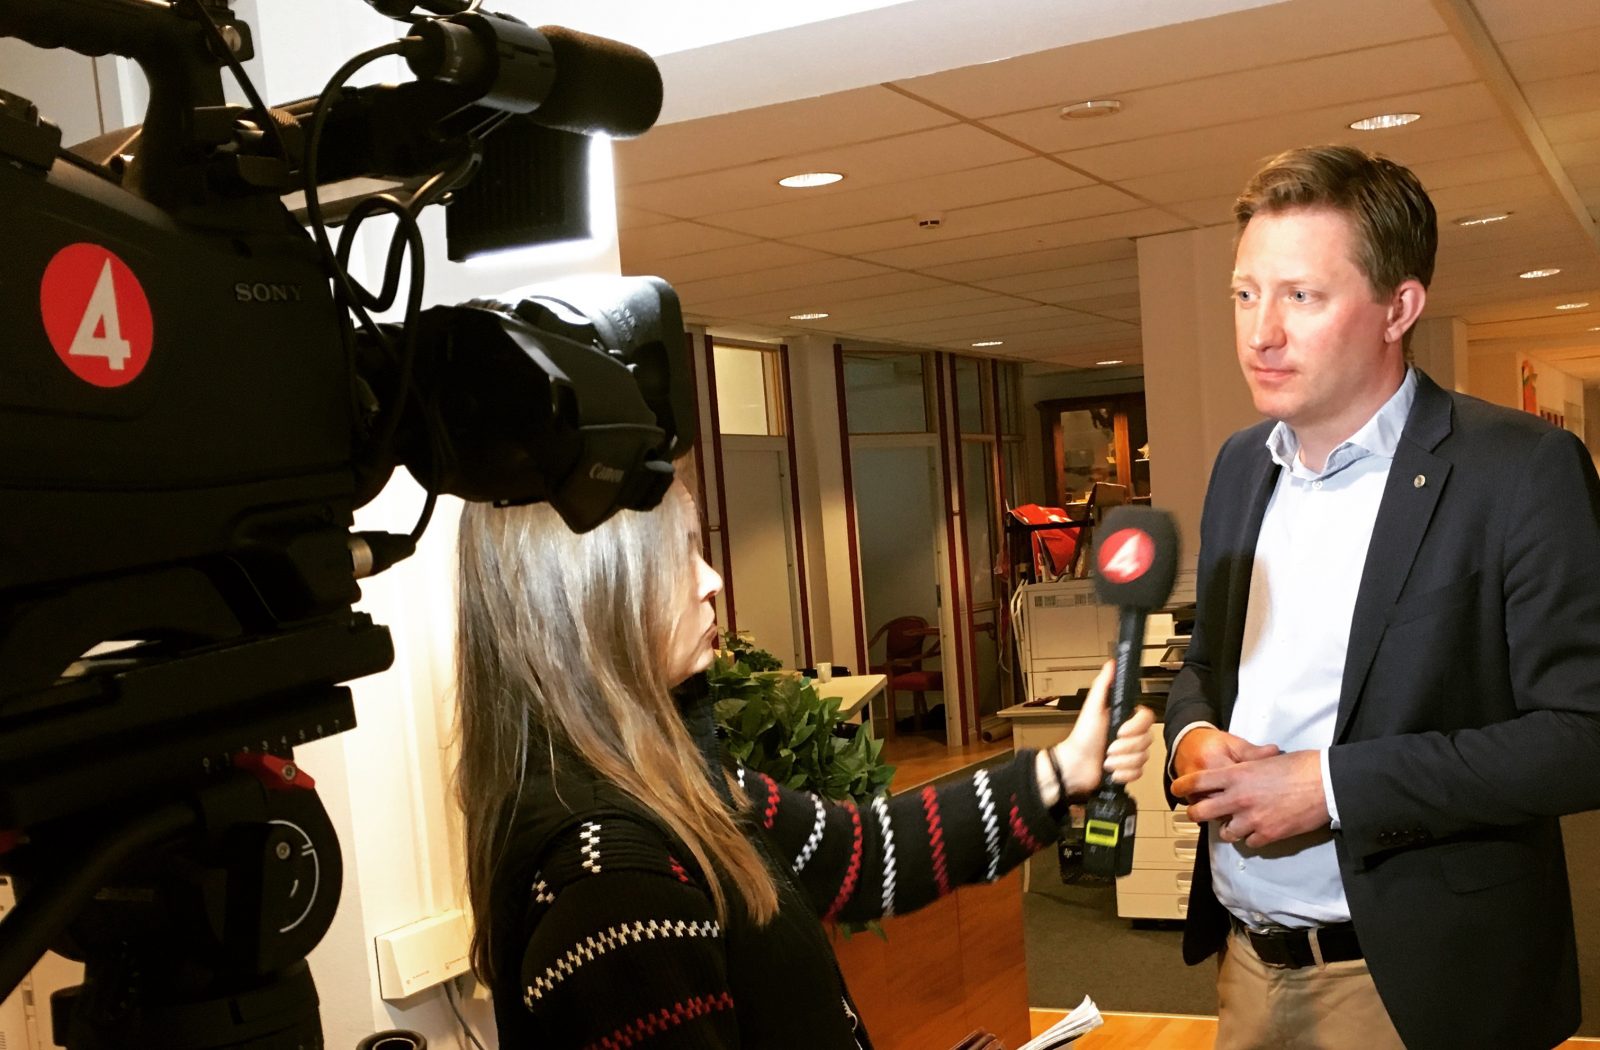 HRFs förbundsordförande intervjuas av TV4. Reporter med filmkamera och mikrofon.